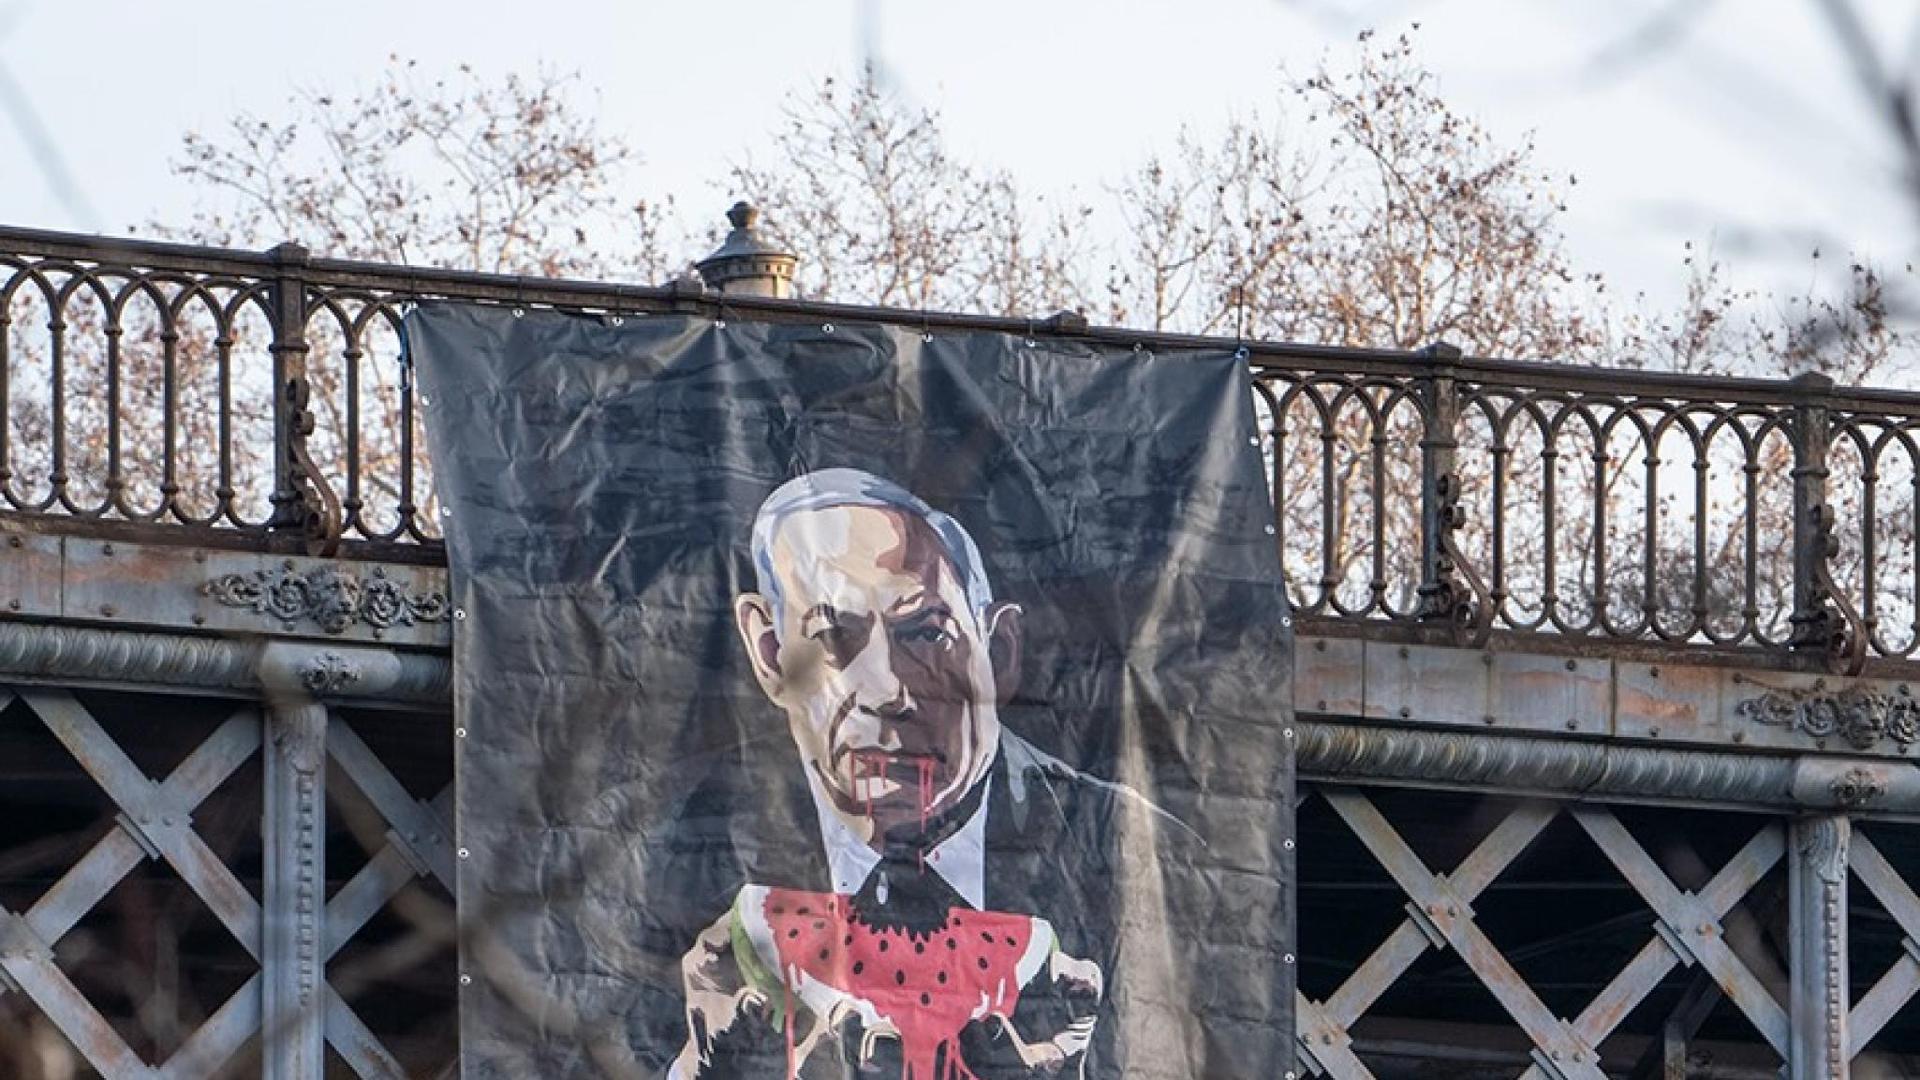 L'opera della street artist Laika contro il "genocidio" di Israele: "C'è bisogno di pace, a tutti i costi"